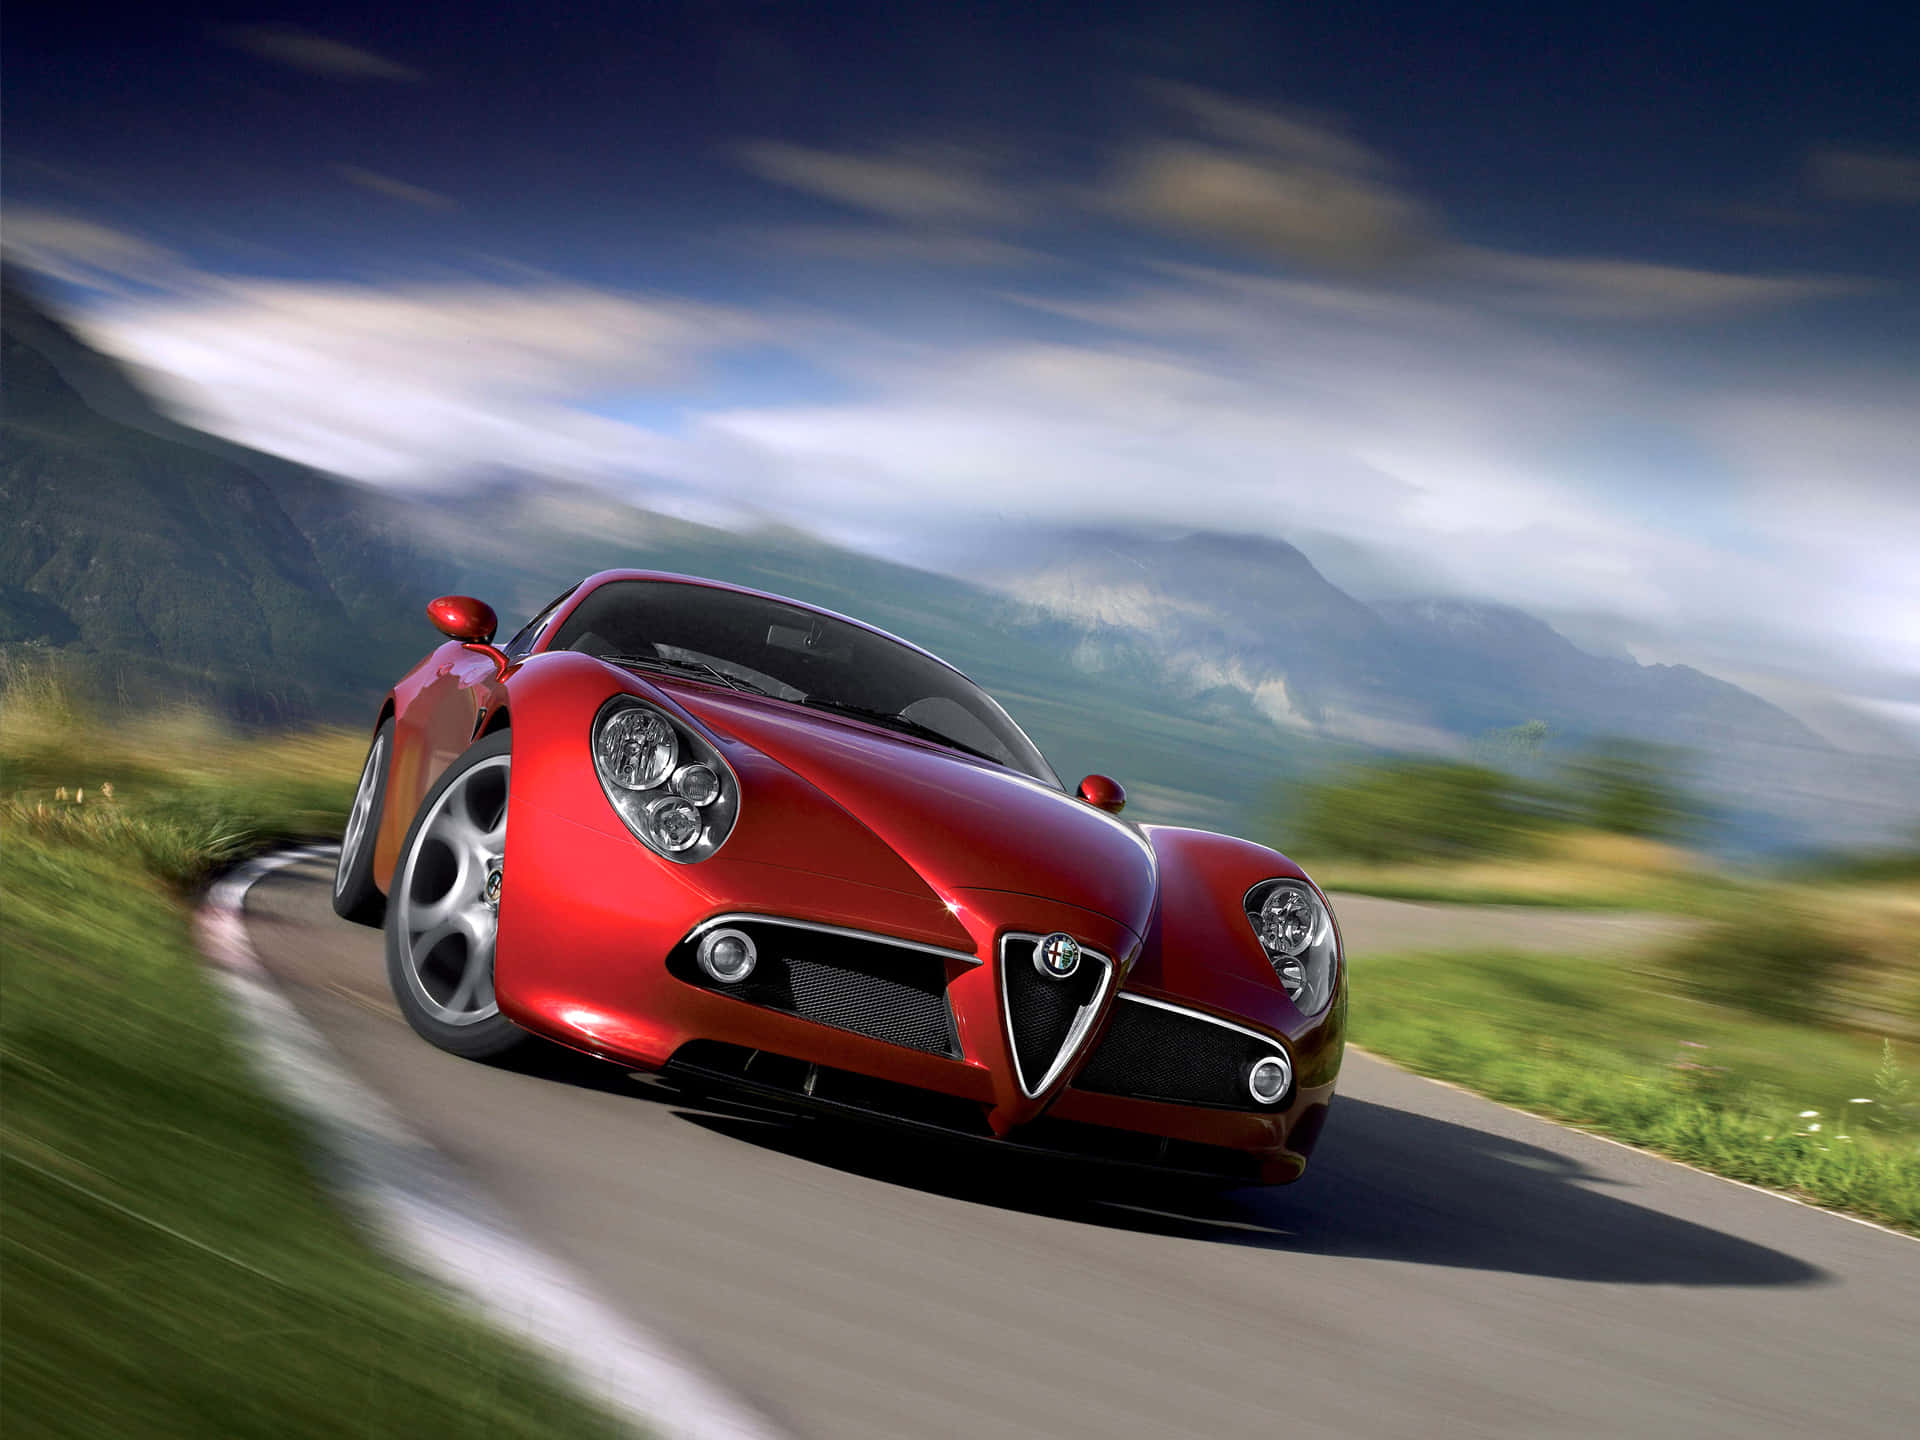 Alfa Romeo 8C Competizione in a striking red color on the road Wallpaper